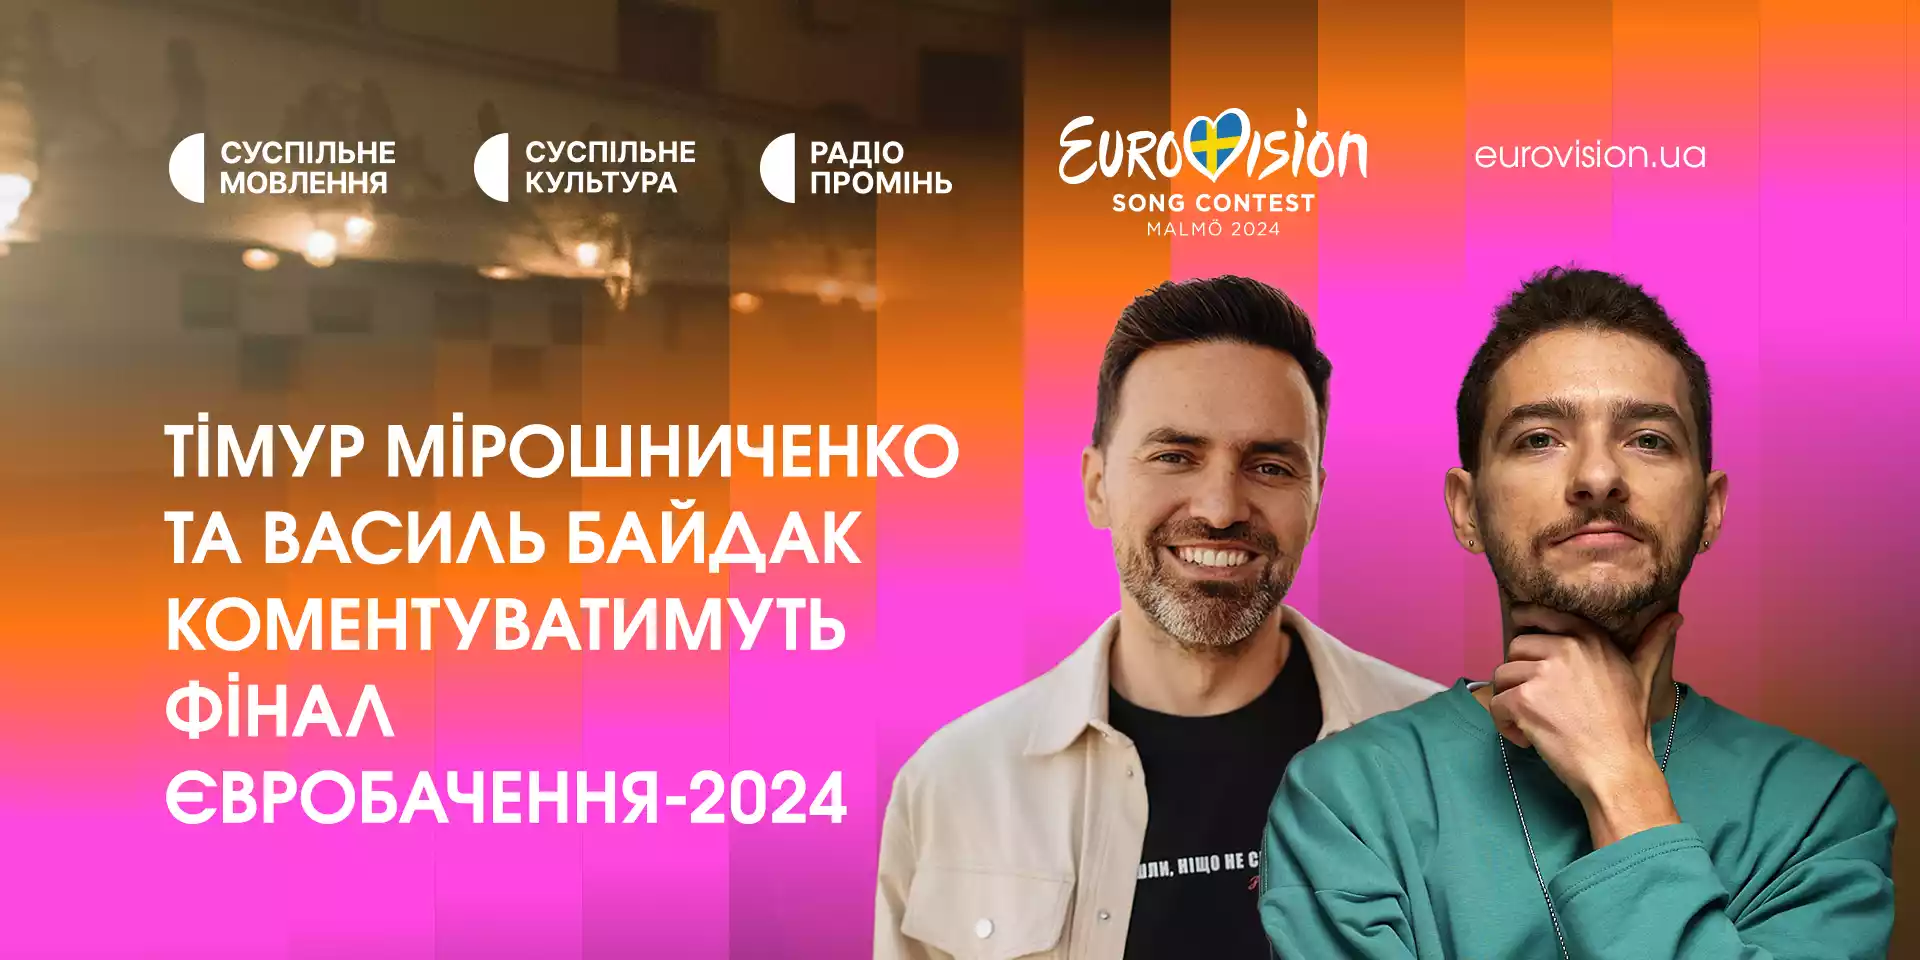 Фінал «Євробачення-2024» коментуватимуть Тімур Мірошниченко та Василь Байдак